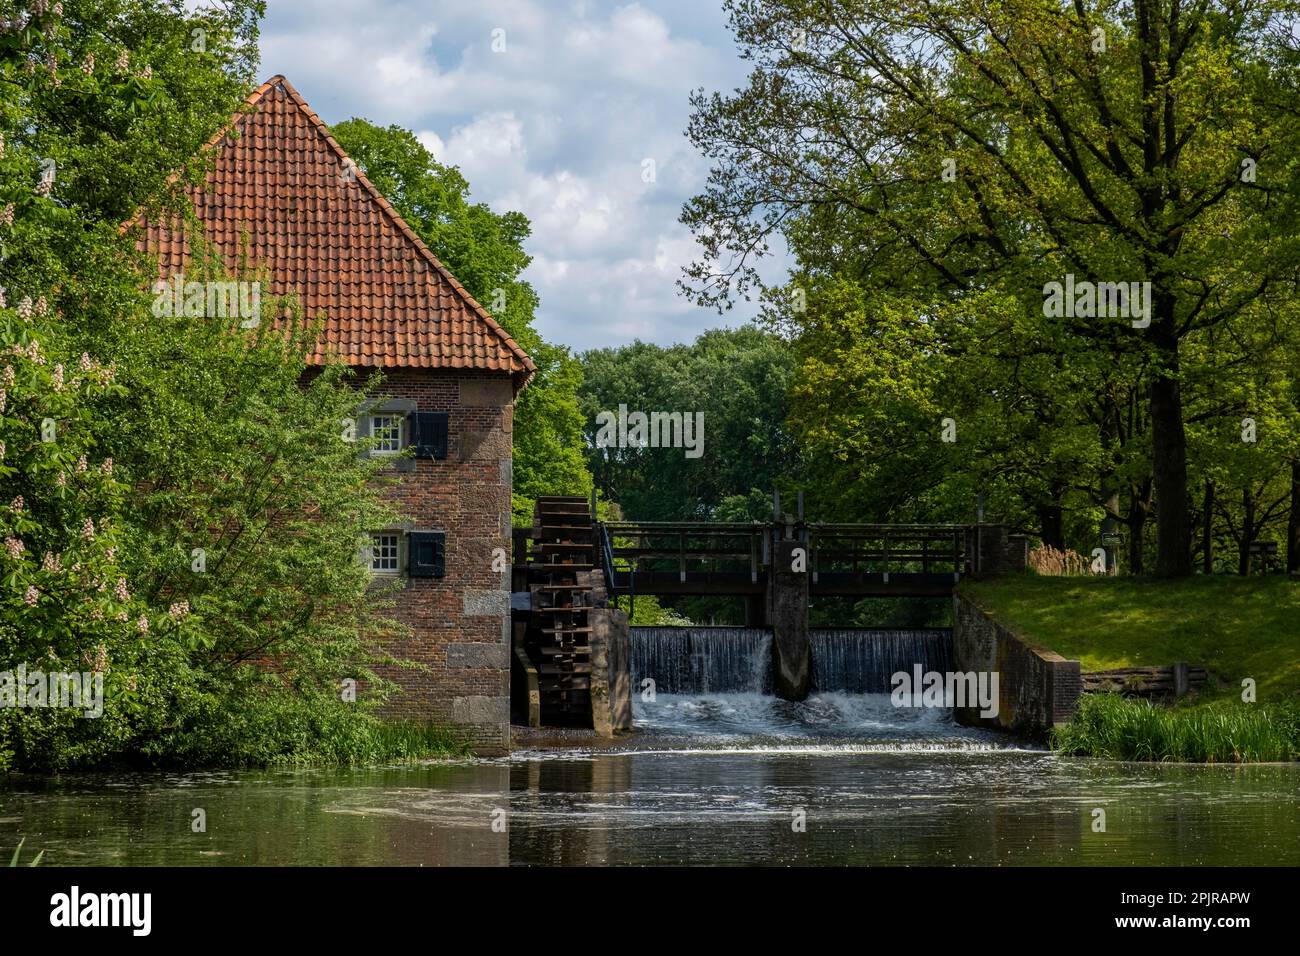 Mallumsche Watermole, Eibergen, Achterhoek, municipality of Gelderland, Netherlands Stock Photo